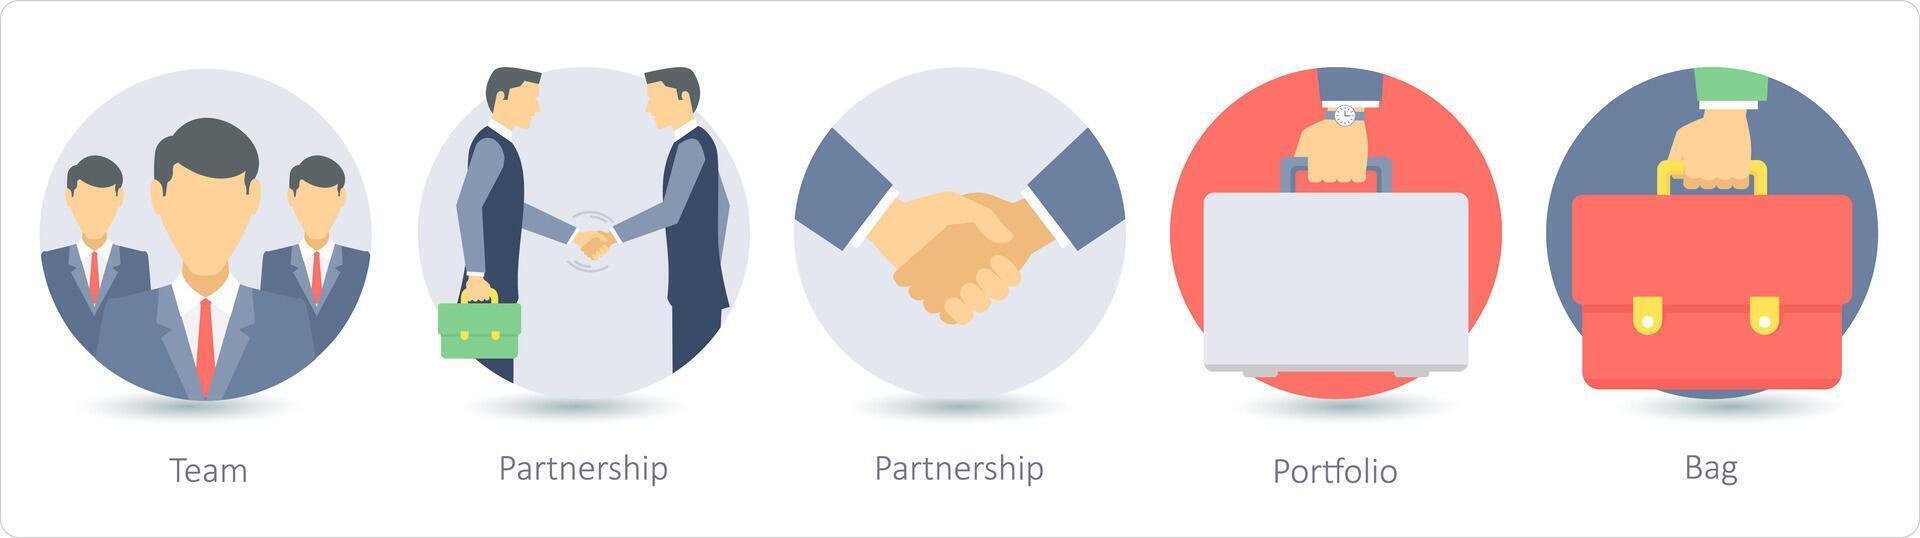 A set of 5 business icons as team, partnership, portfolio vector